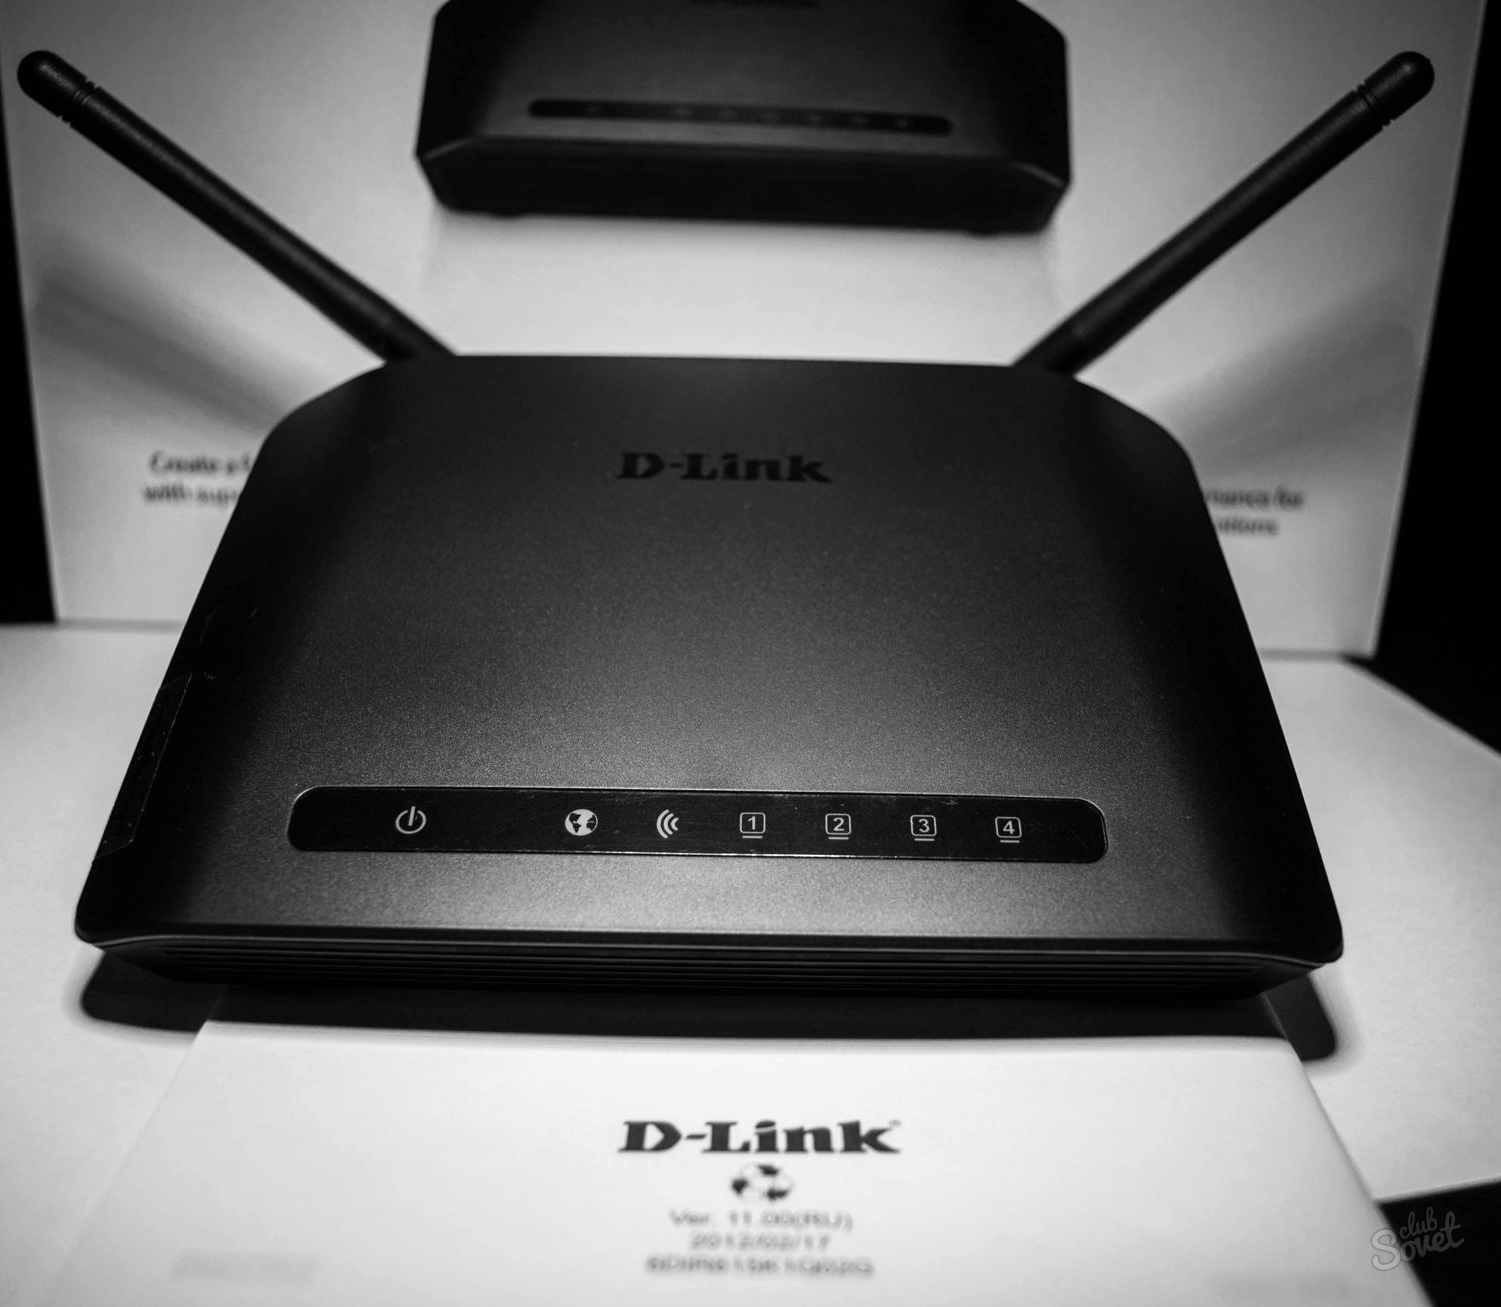 Hogyan állíthatunk be egy wifi router D linket